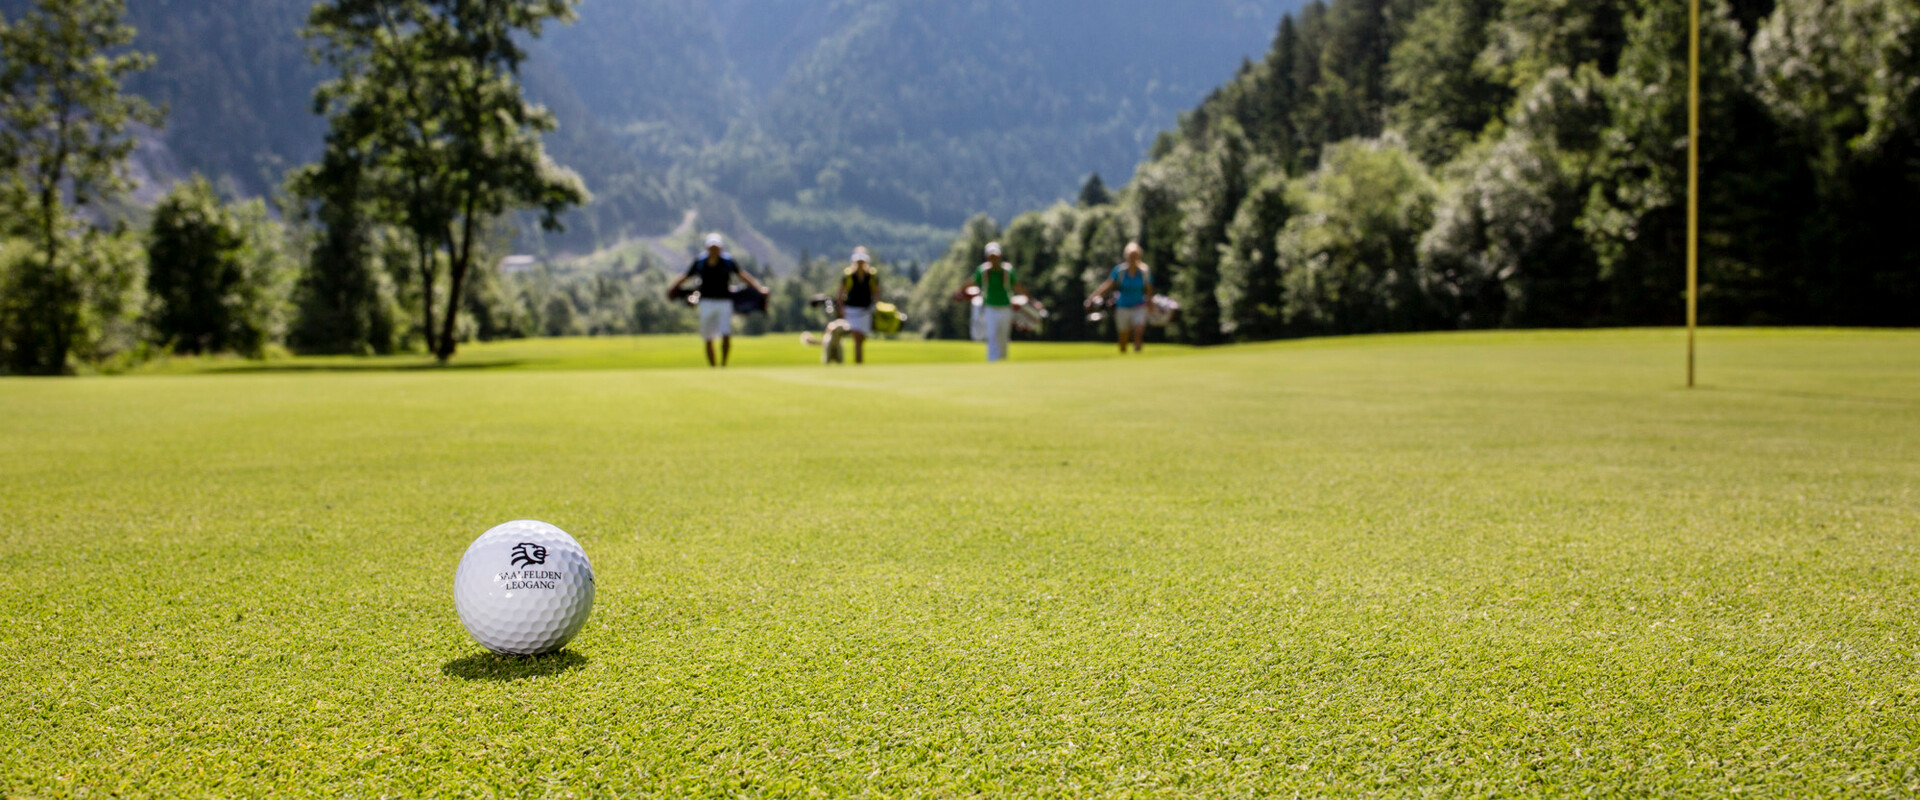 Golf spielen bei Sonnenschein in Saalfelden Leogang | © Peter Moser